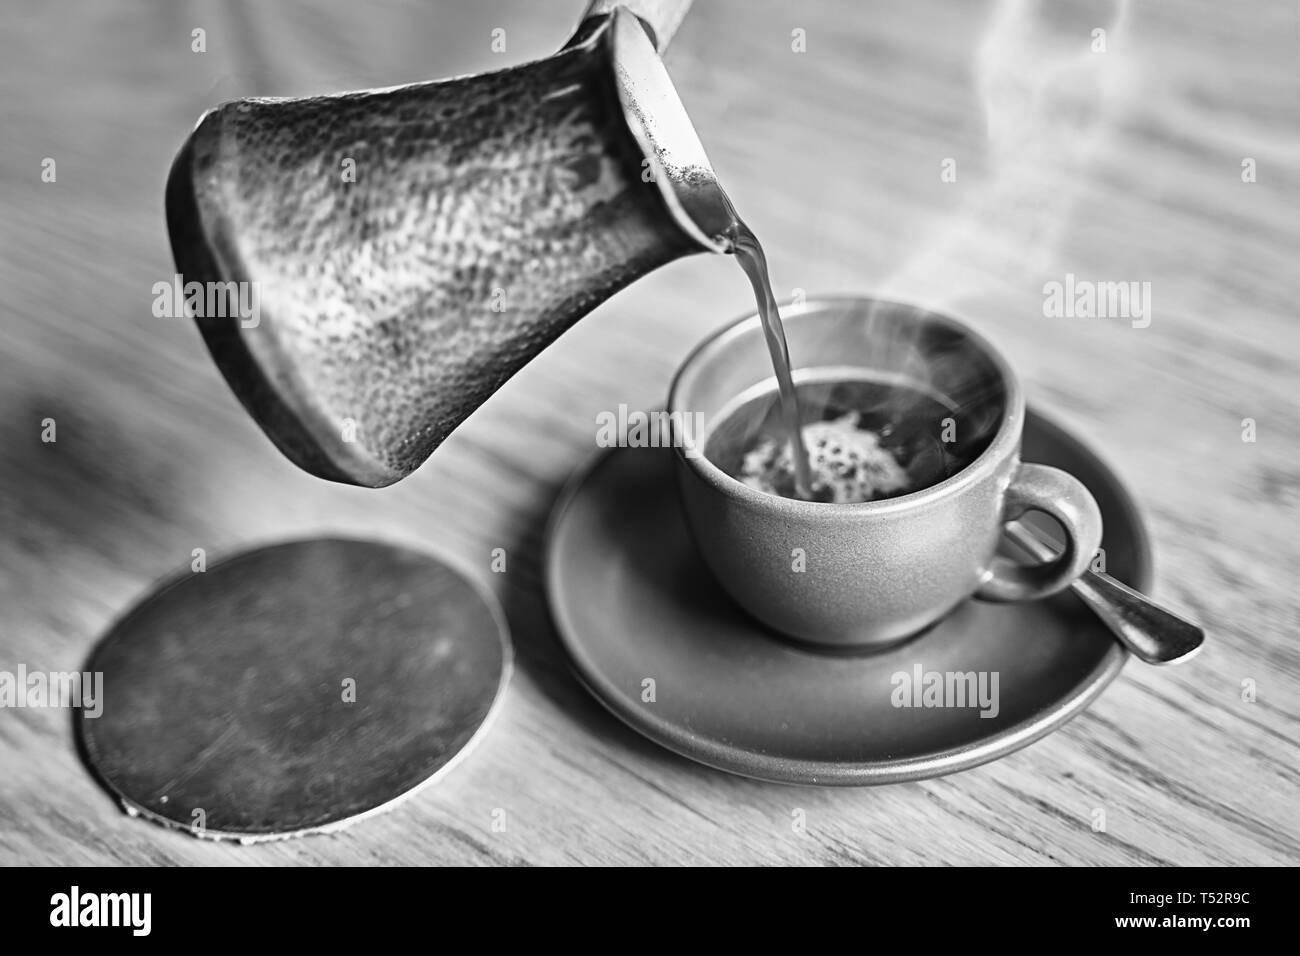 Dans le café de style turc oriental servi dans cezve, un petit pot à long manche avec un bec verseur et tasse sur une table en bois Banque D'Images